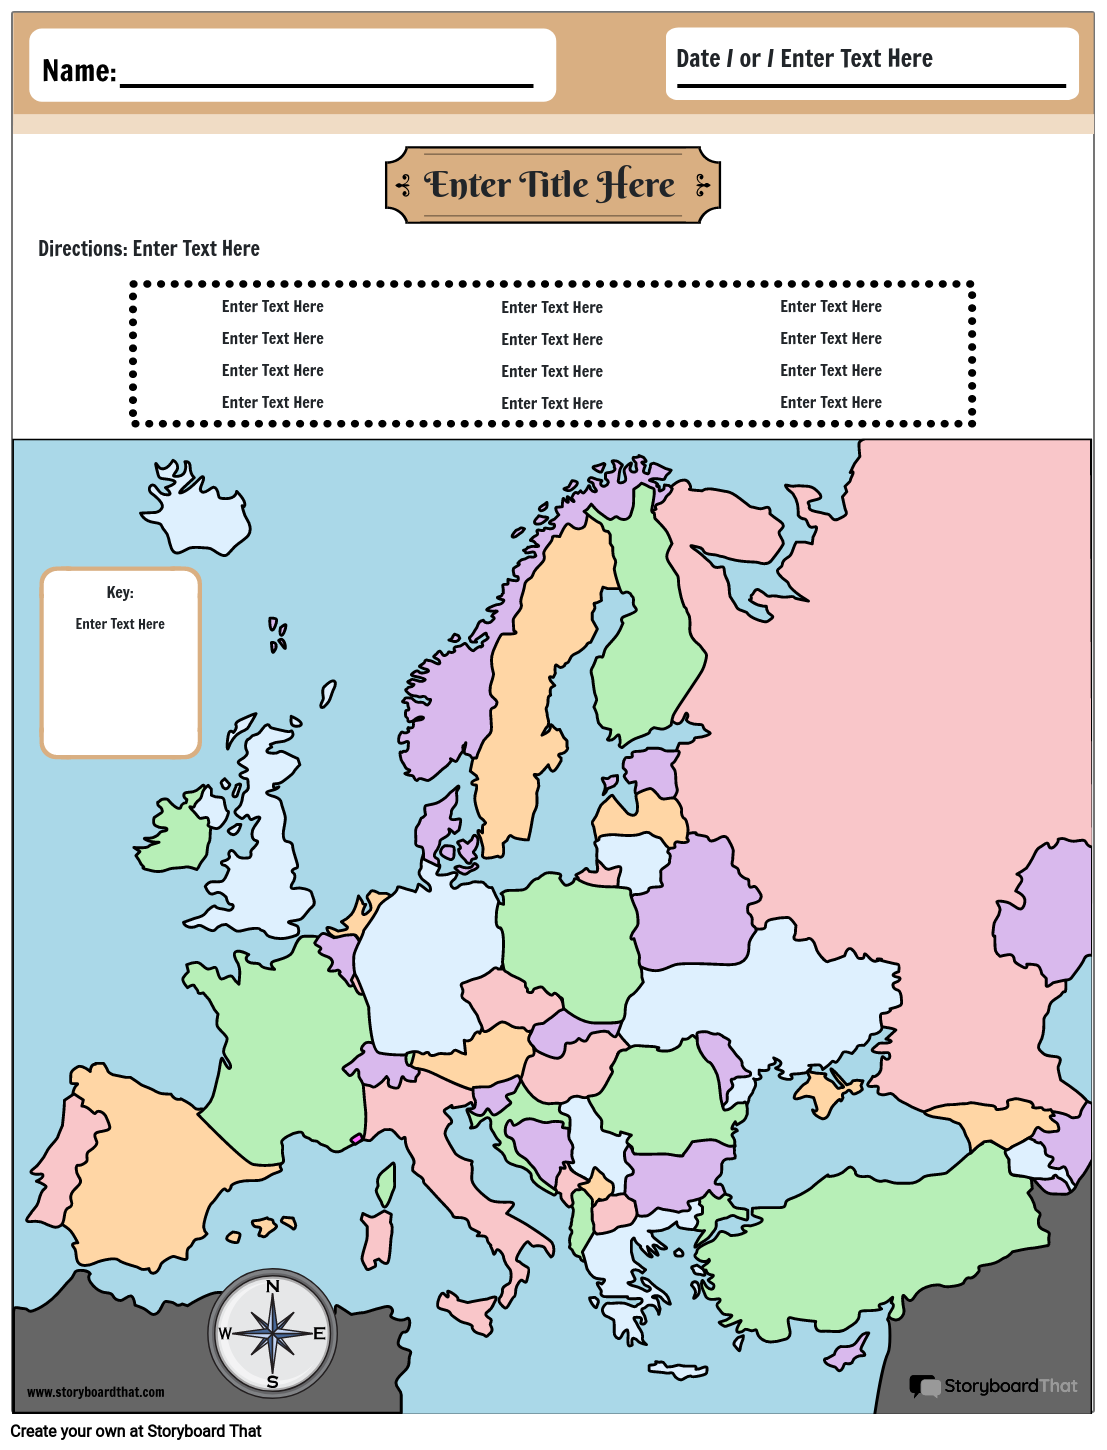 Harta Europei